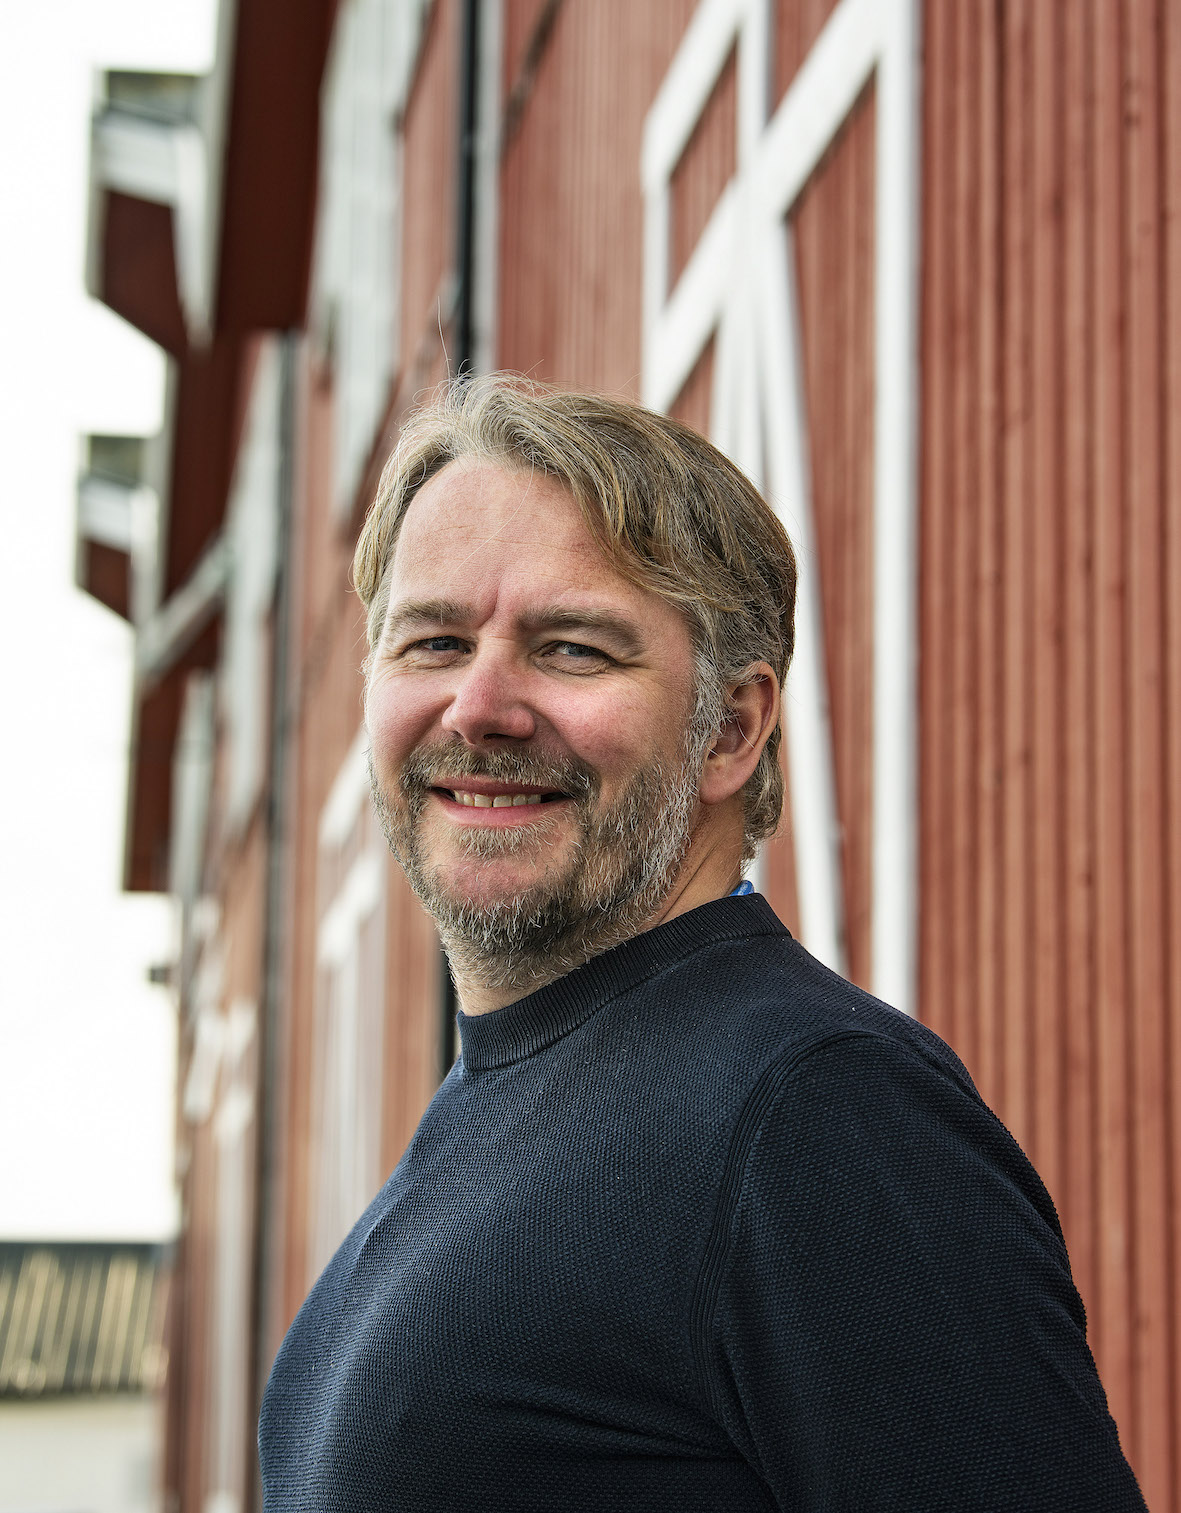 Alf Knutsen, CEO of Kvarøy Arctic